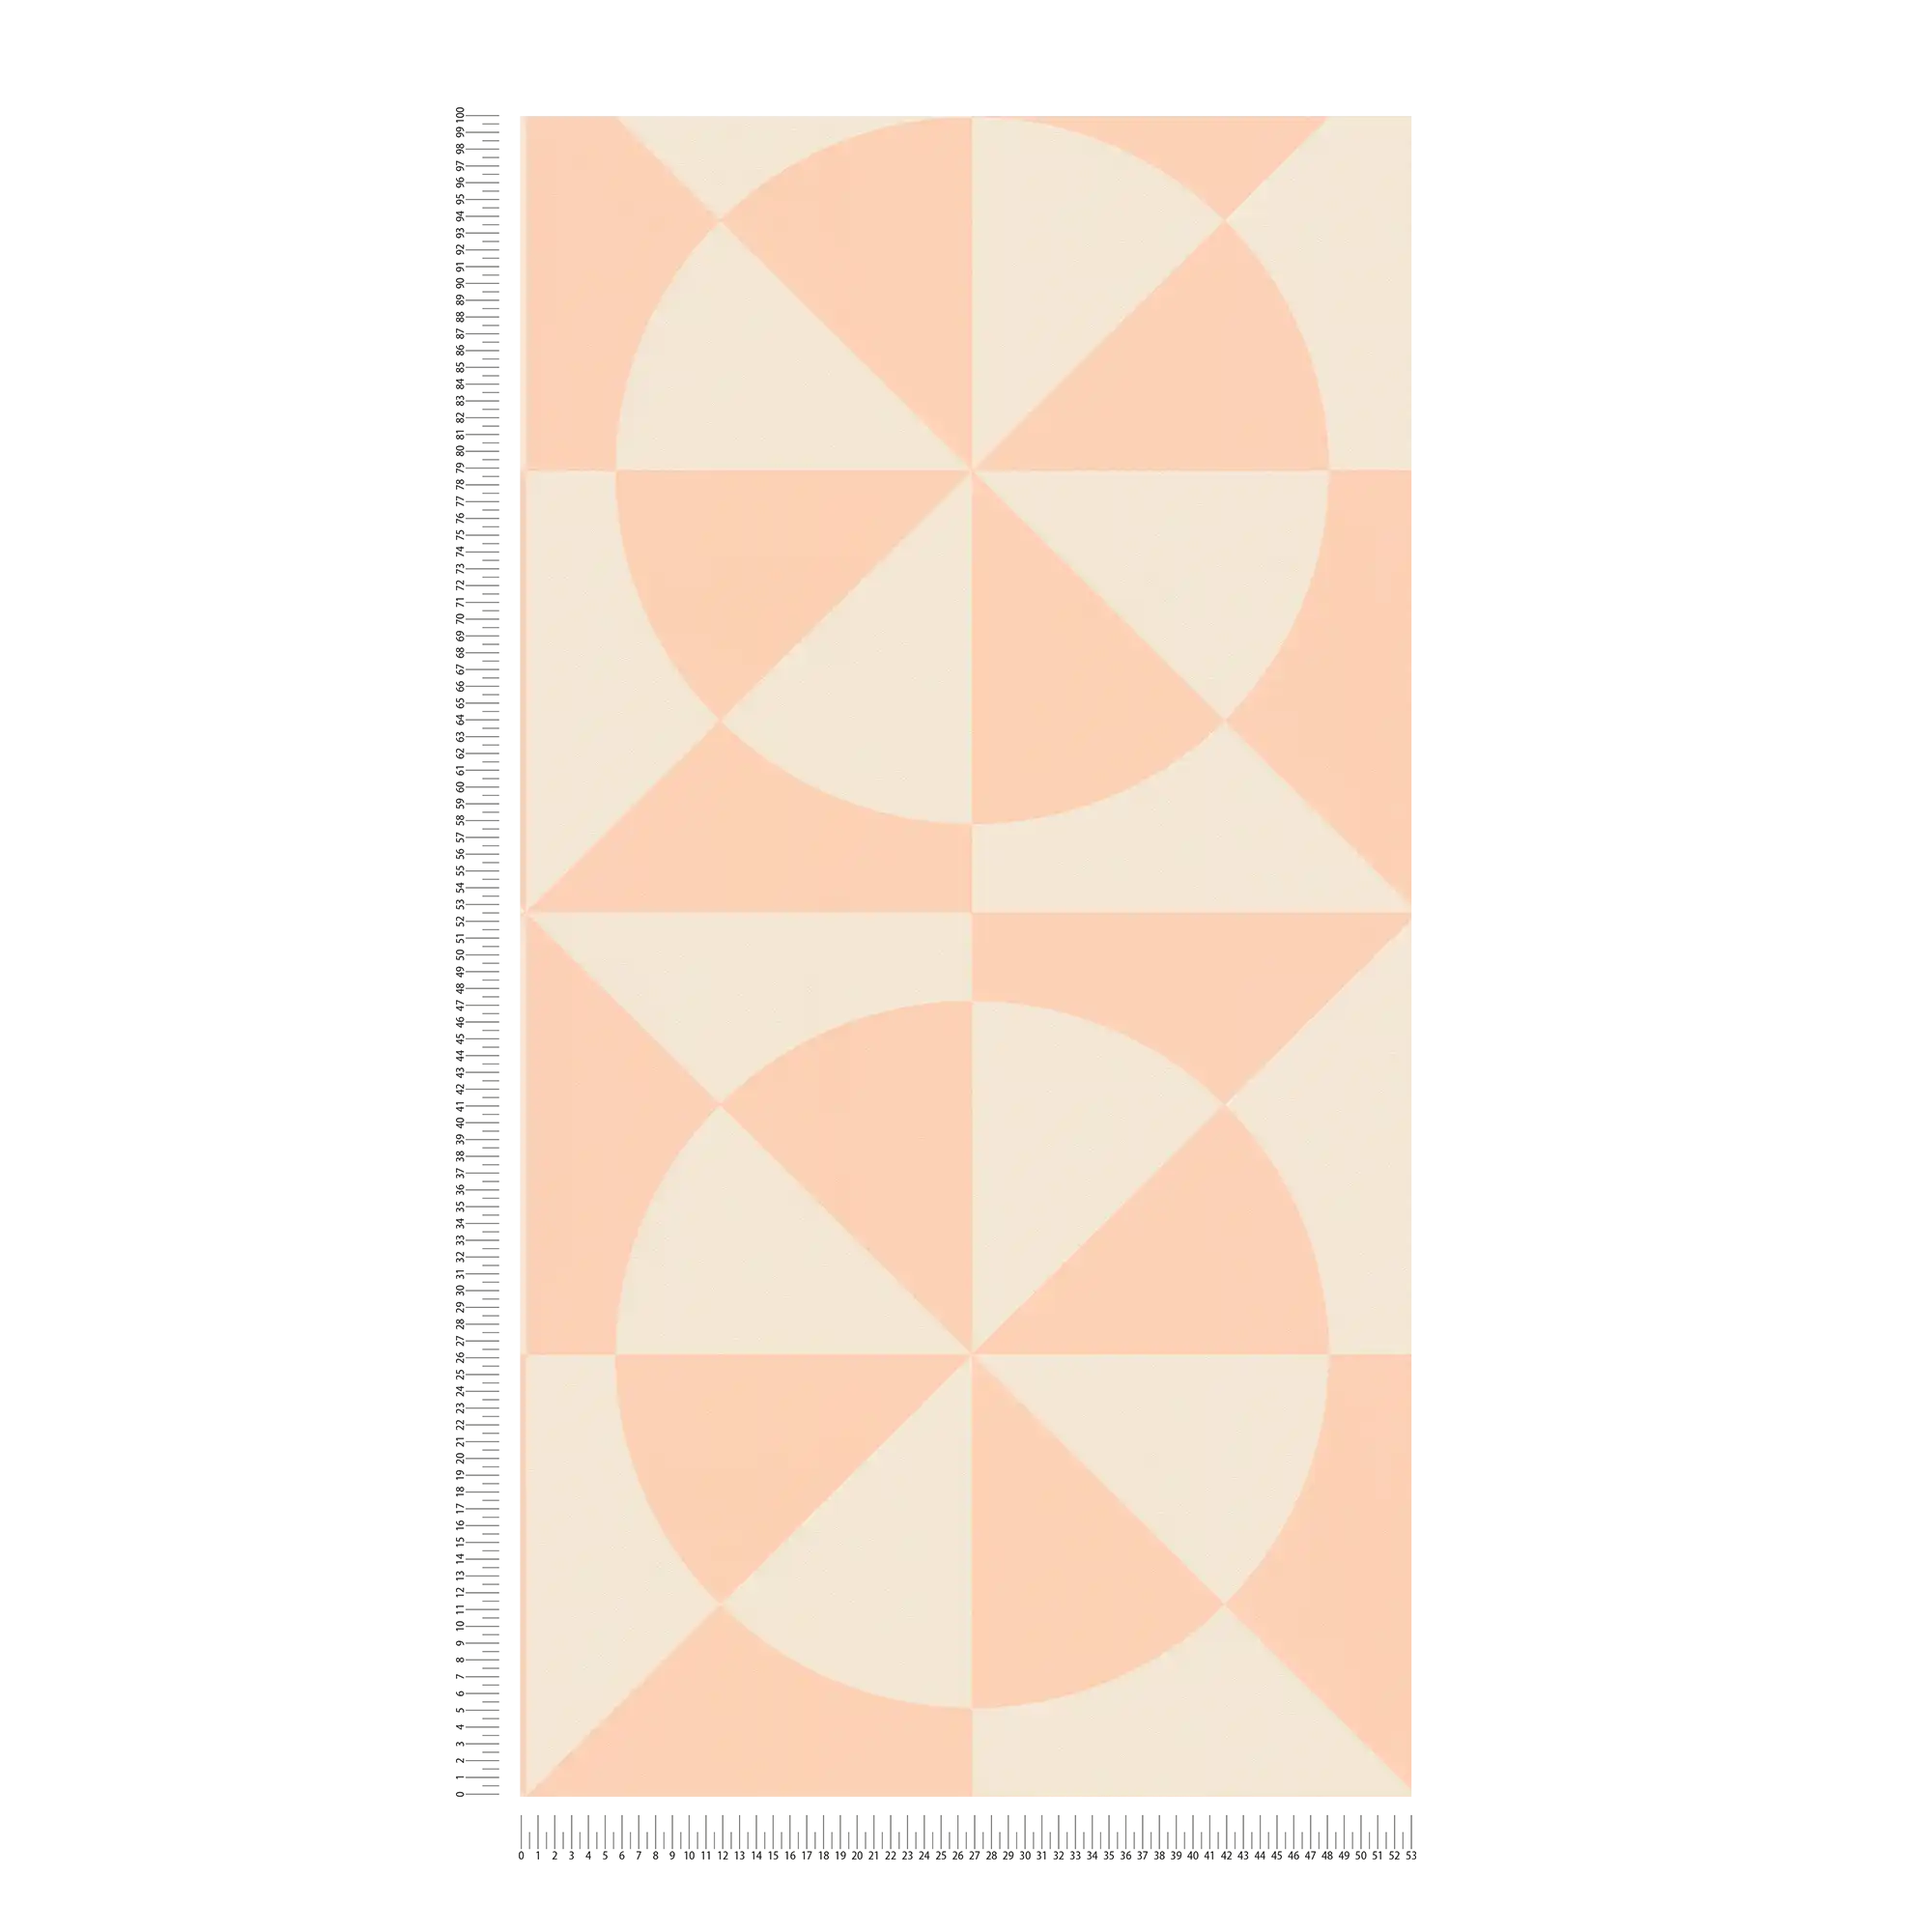             Grafisch vliesbehang met driehoeken en cirkels - crème, roze
        